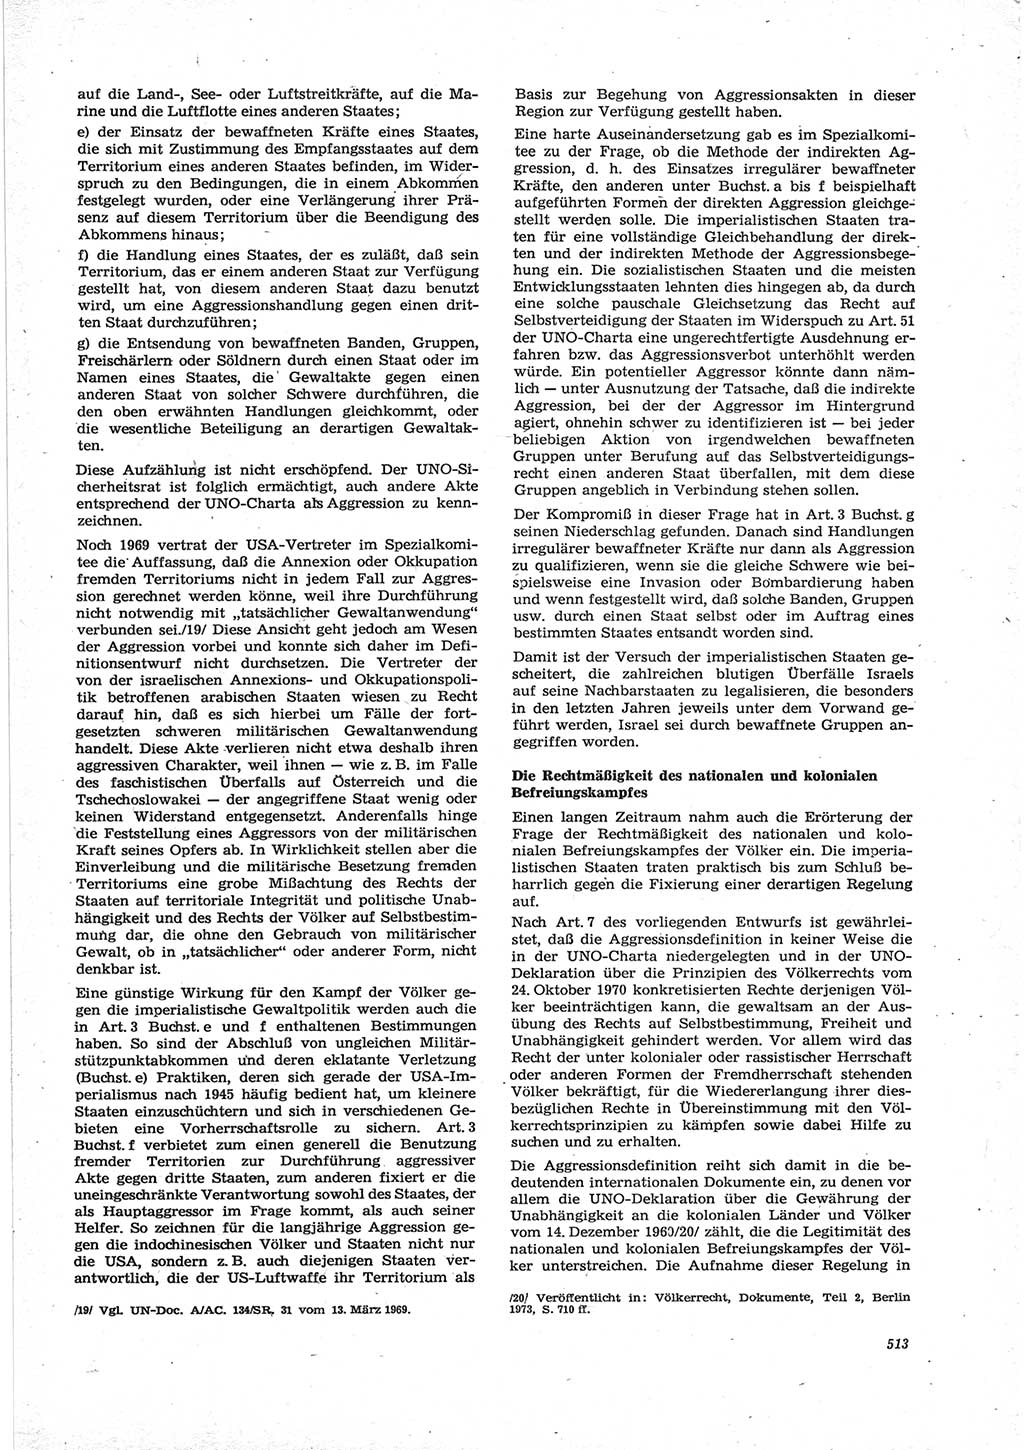 Neue Justiz (NJ), Zeitschrift für Recht und Rechtswissenschaft [Deutsche Demokratische Republik (DDR)], 28. Jahrgang 1974, Seite 513 (NJ DDR 1974, S. 513)